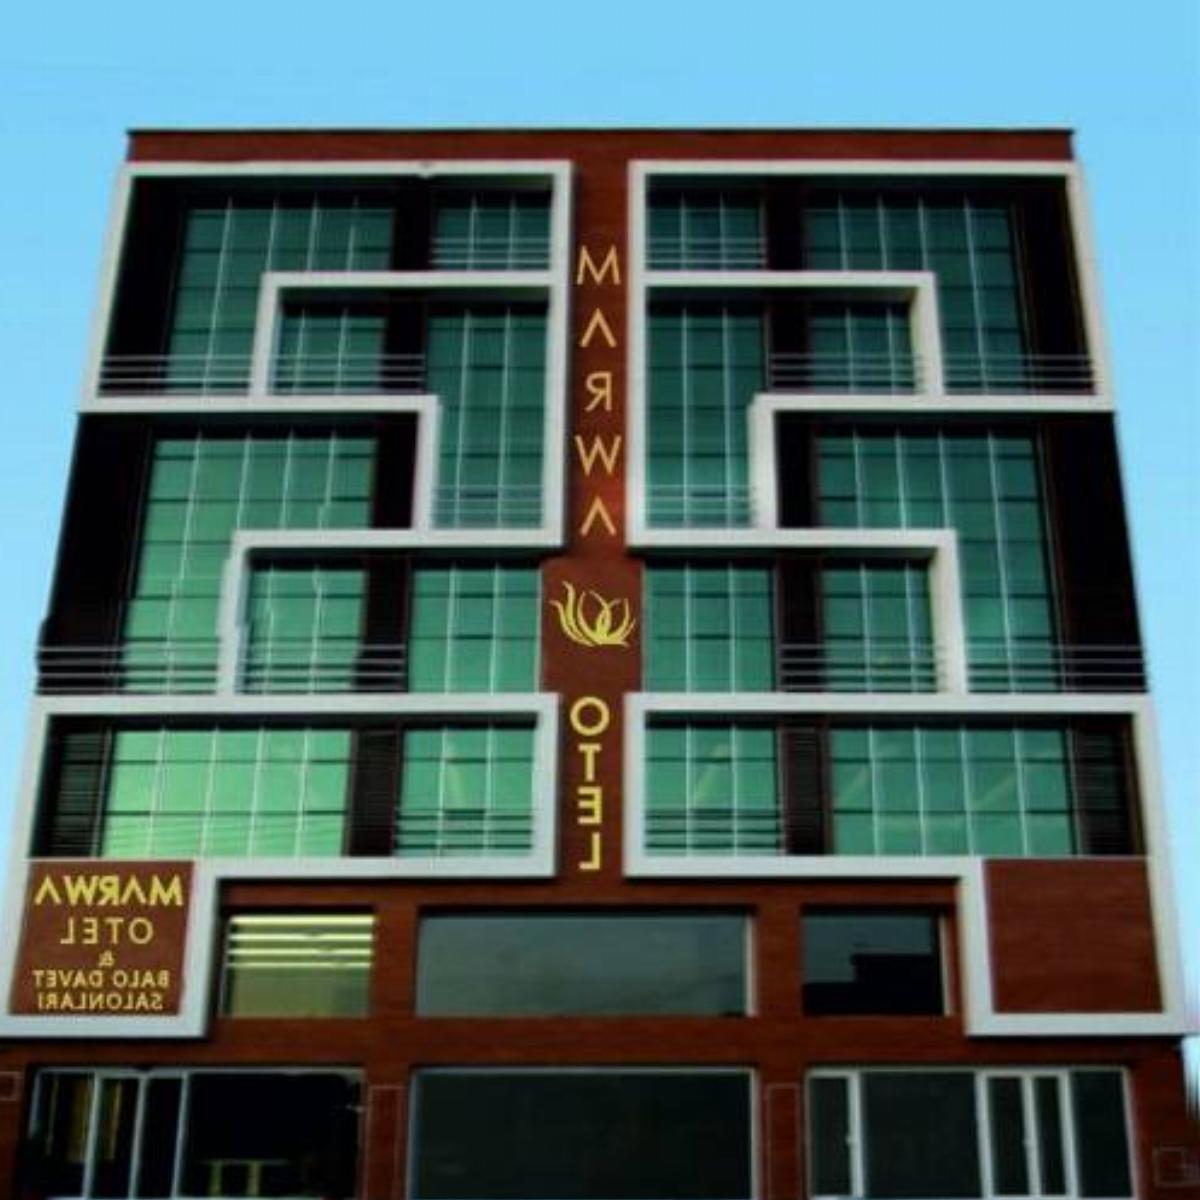 Marwa Hotel Hotel Eskişehir Turkey